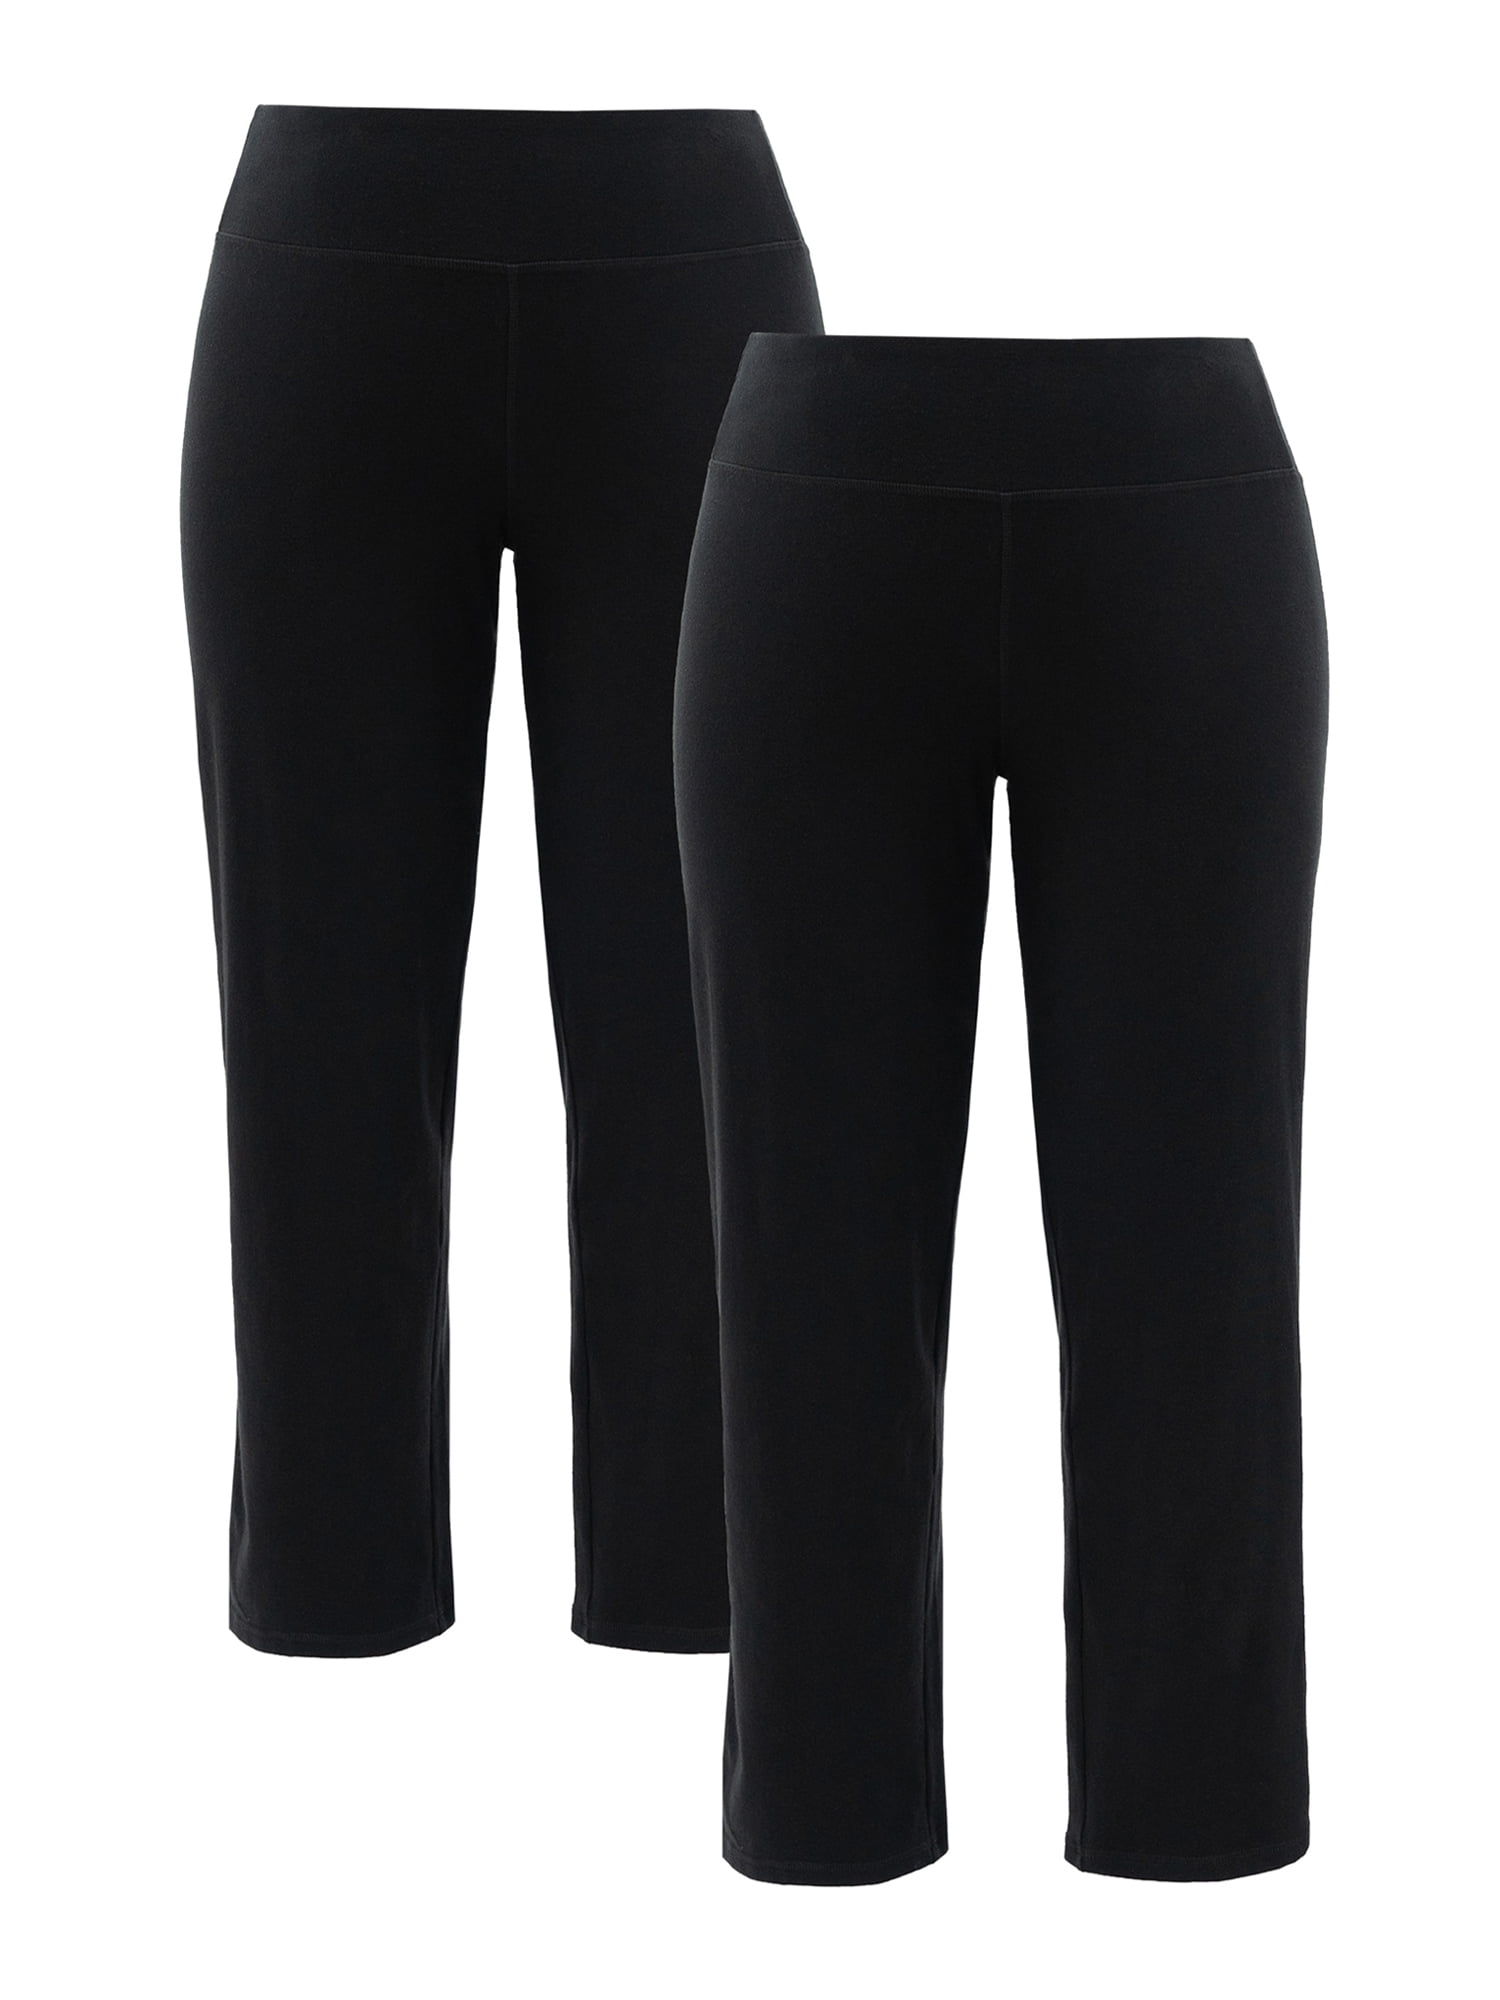 Girls Skinny Pull On School Trousers School Uniform Plain Stretch Ages  3-18y | eBay